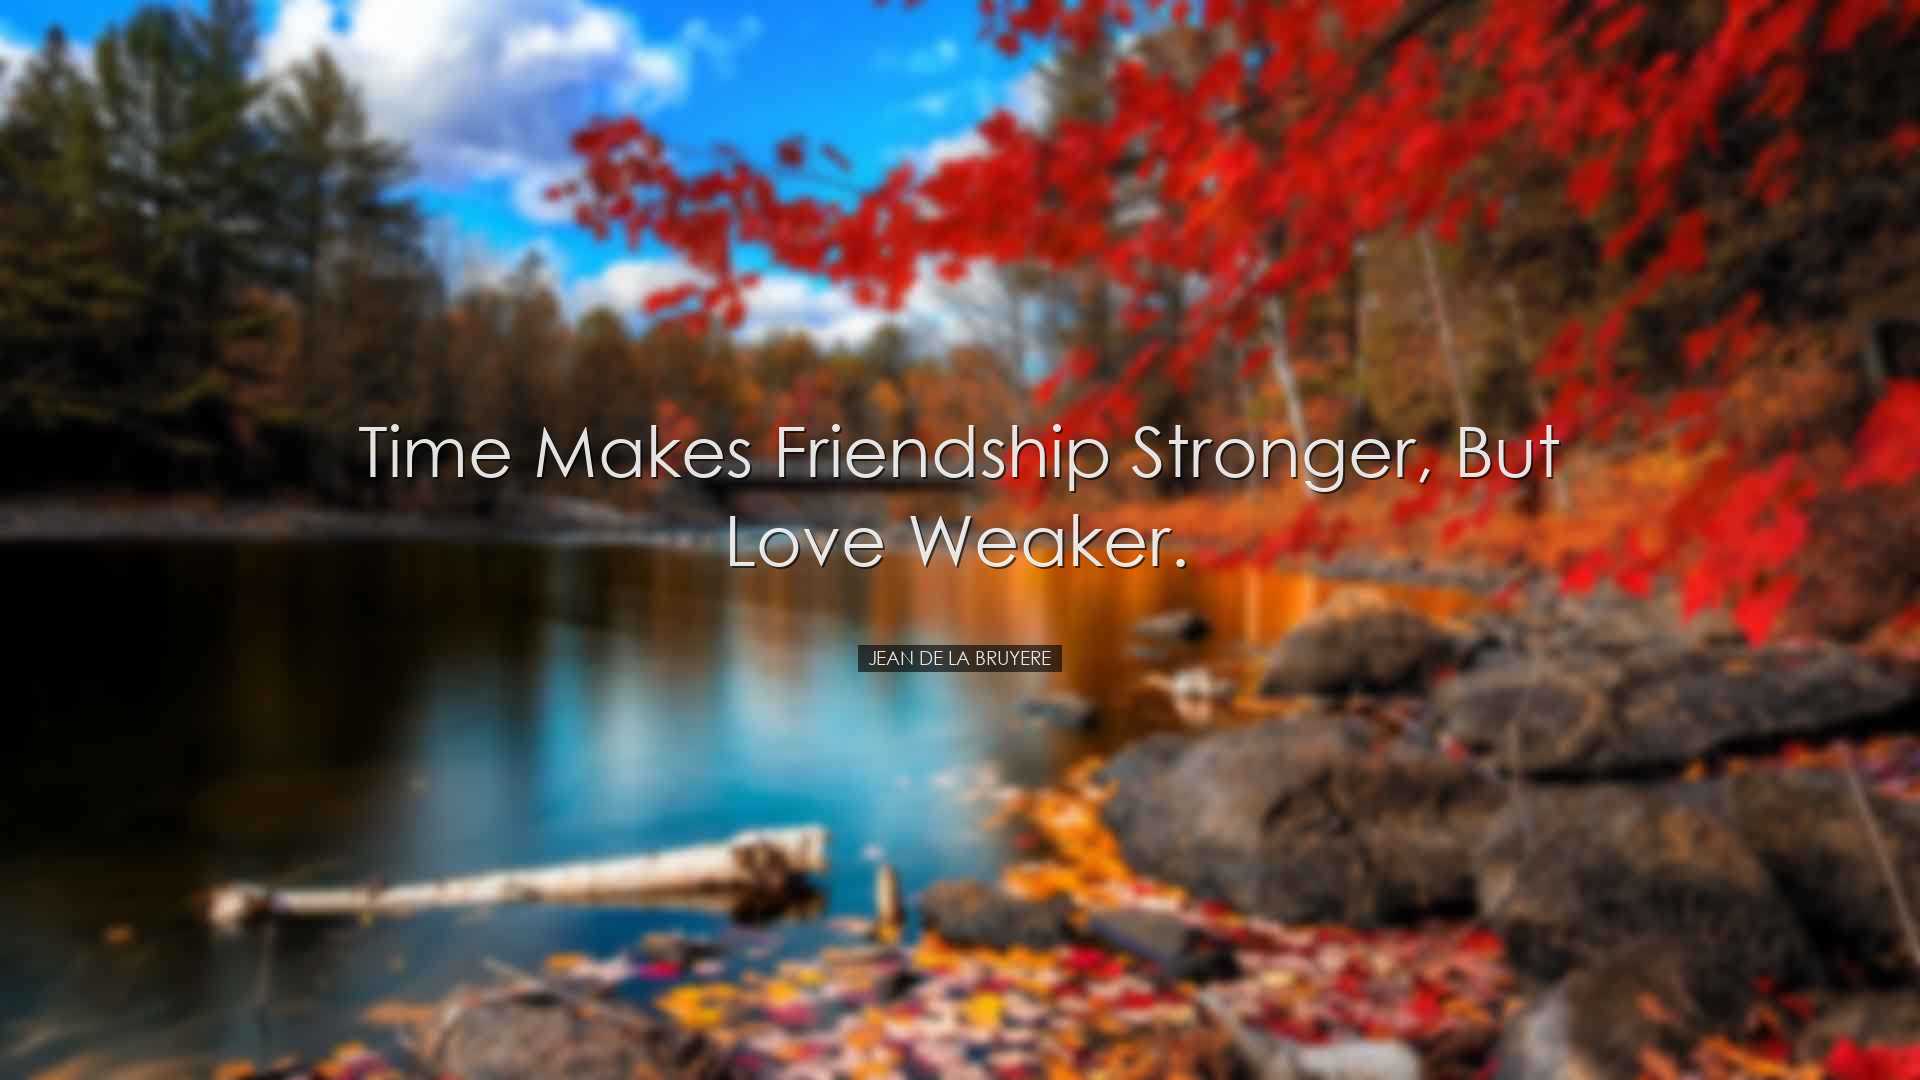 Time makes friendship stronger, but love weaker. - Jean de la Bruy